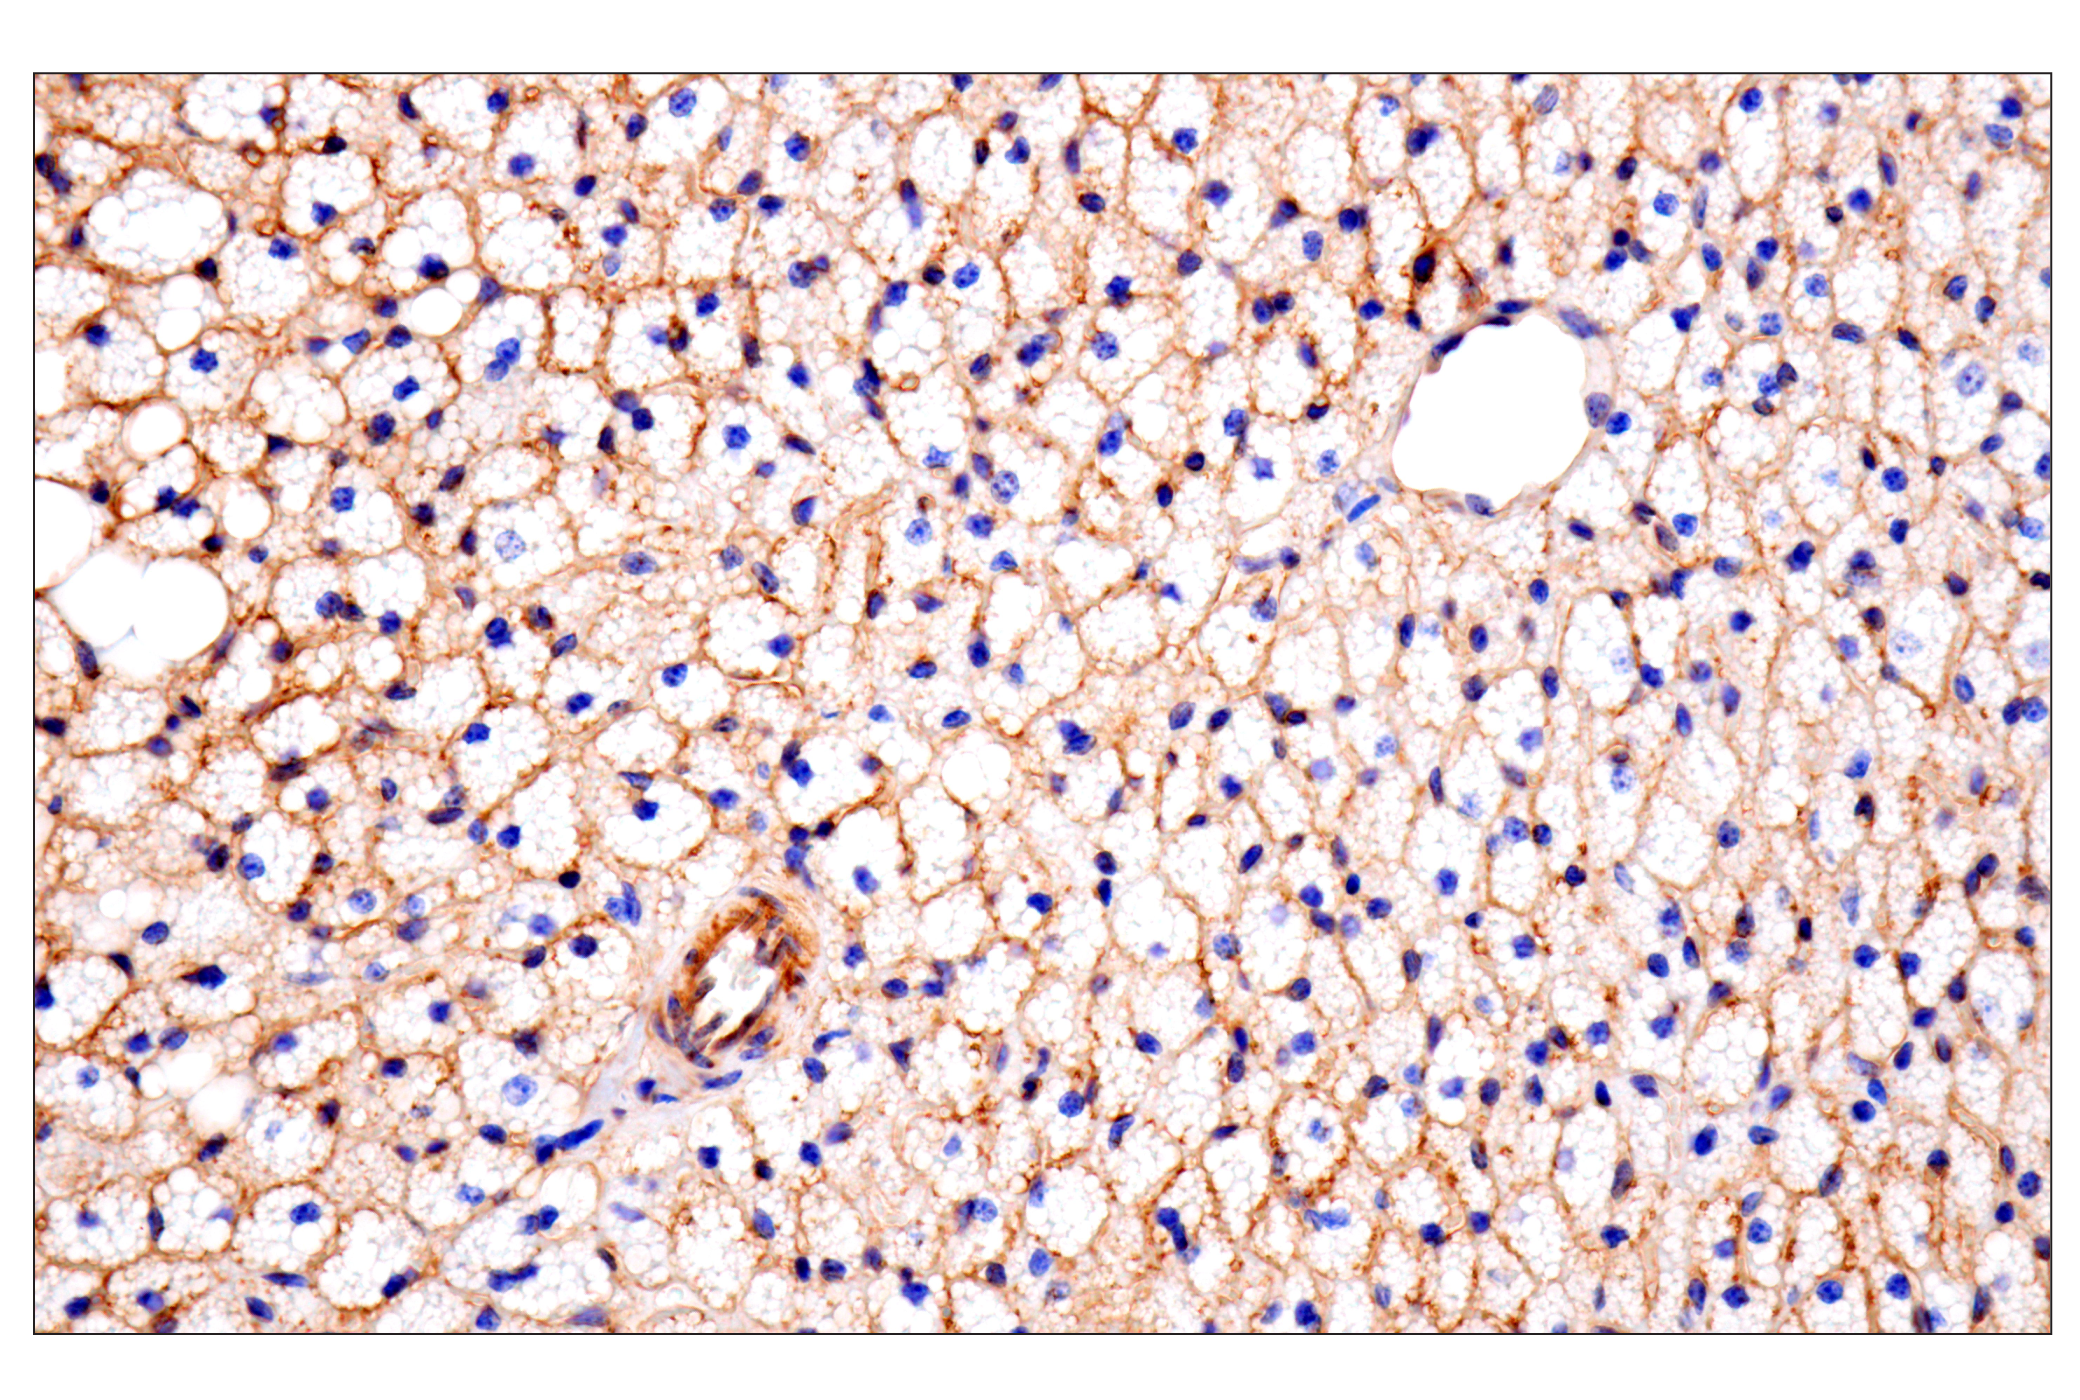  Image 31: Mouse Reactive Exosome Marker Antibody Sampler Kit